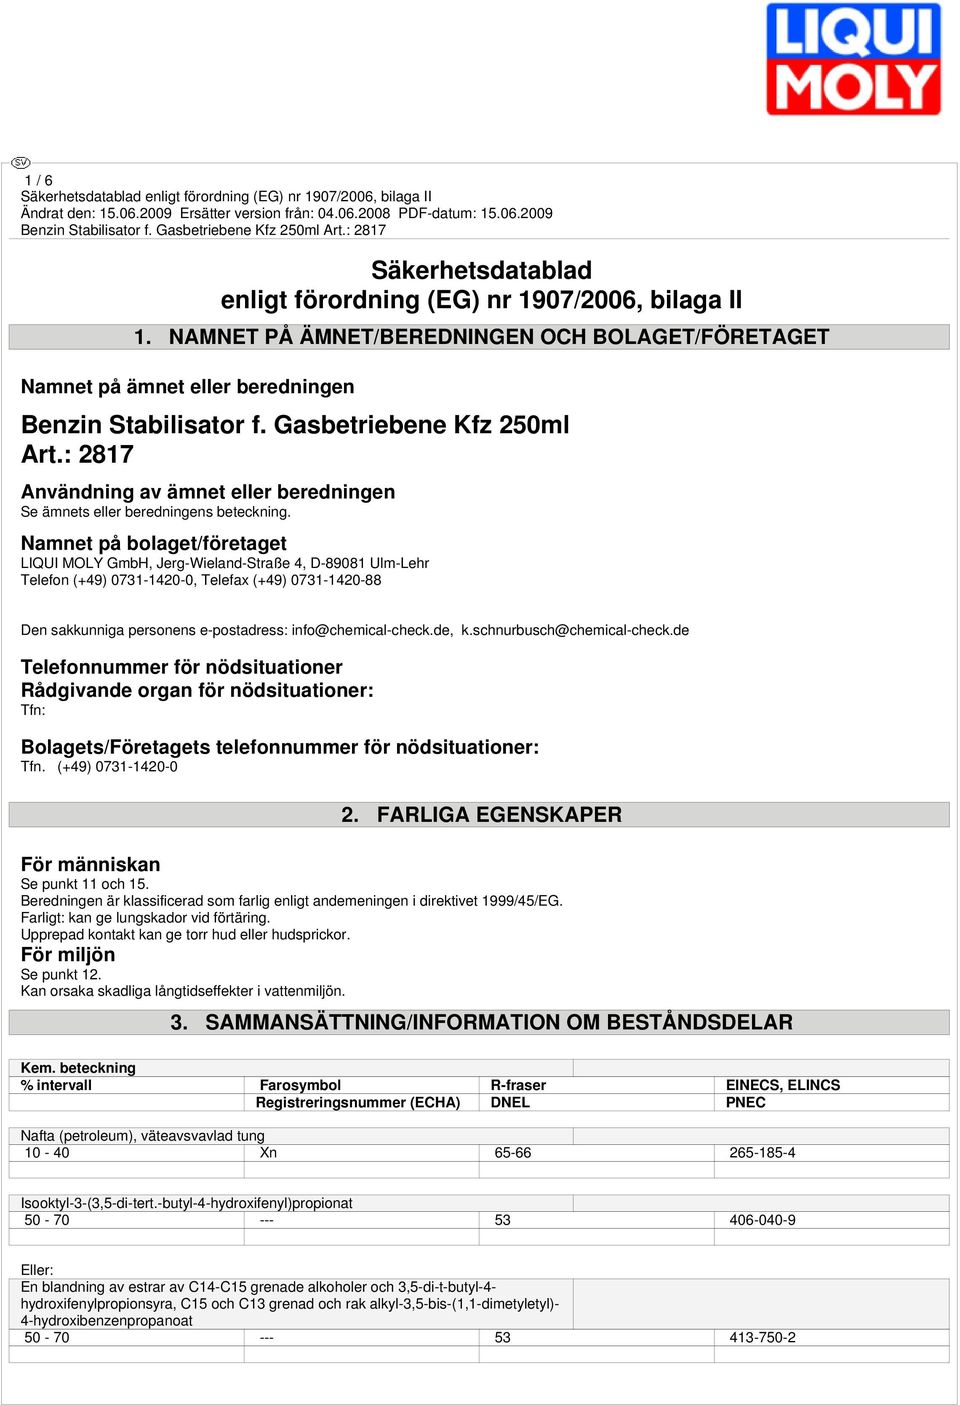 Namnet på bolaget/företaget LIQUI MOLY GmbH, Jerg-Wieland-Straße 4, D-89081 Ulm-Lehr Telefon (+49) 0731-1420-0, Telefax (+49) 0731-1420-88 Den sakkunniga personens e-postadress: info@chemical-check.